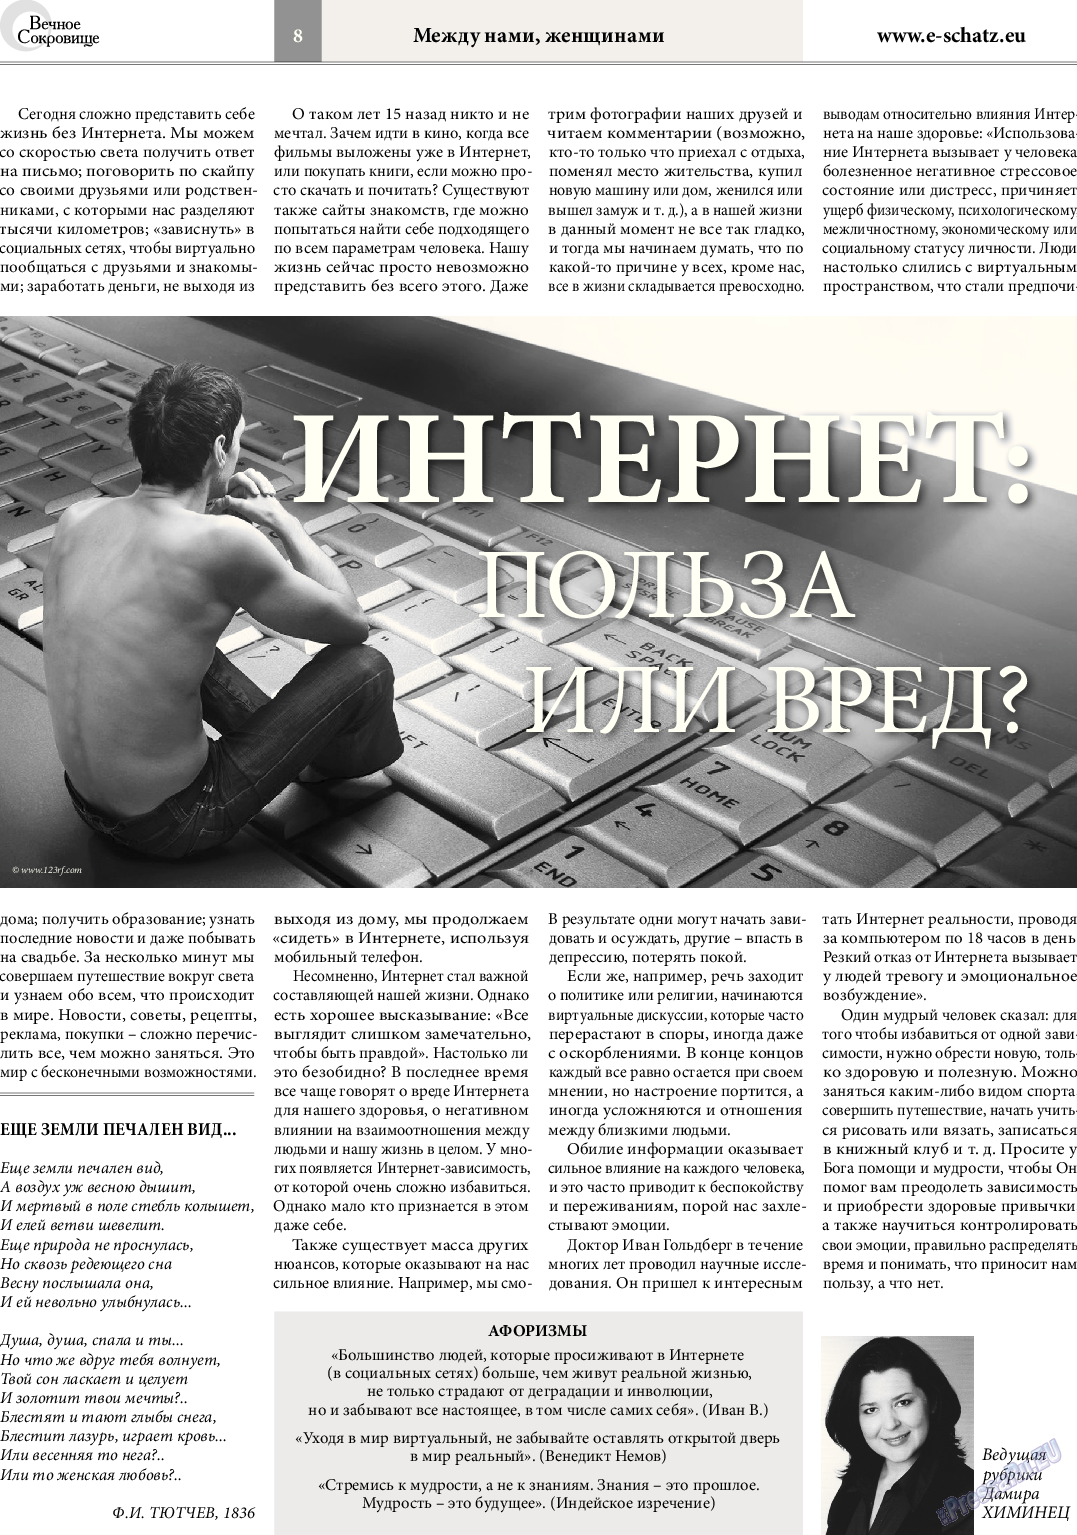 Вечное сокровище, газета. 2014 №2 стр.8